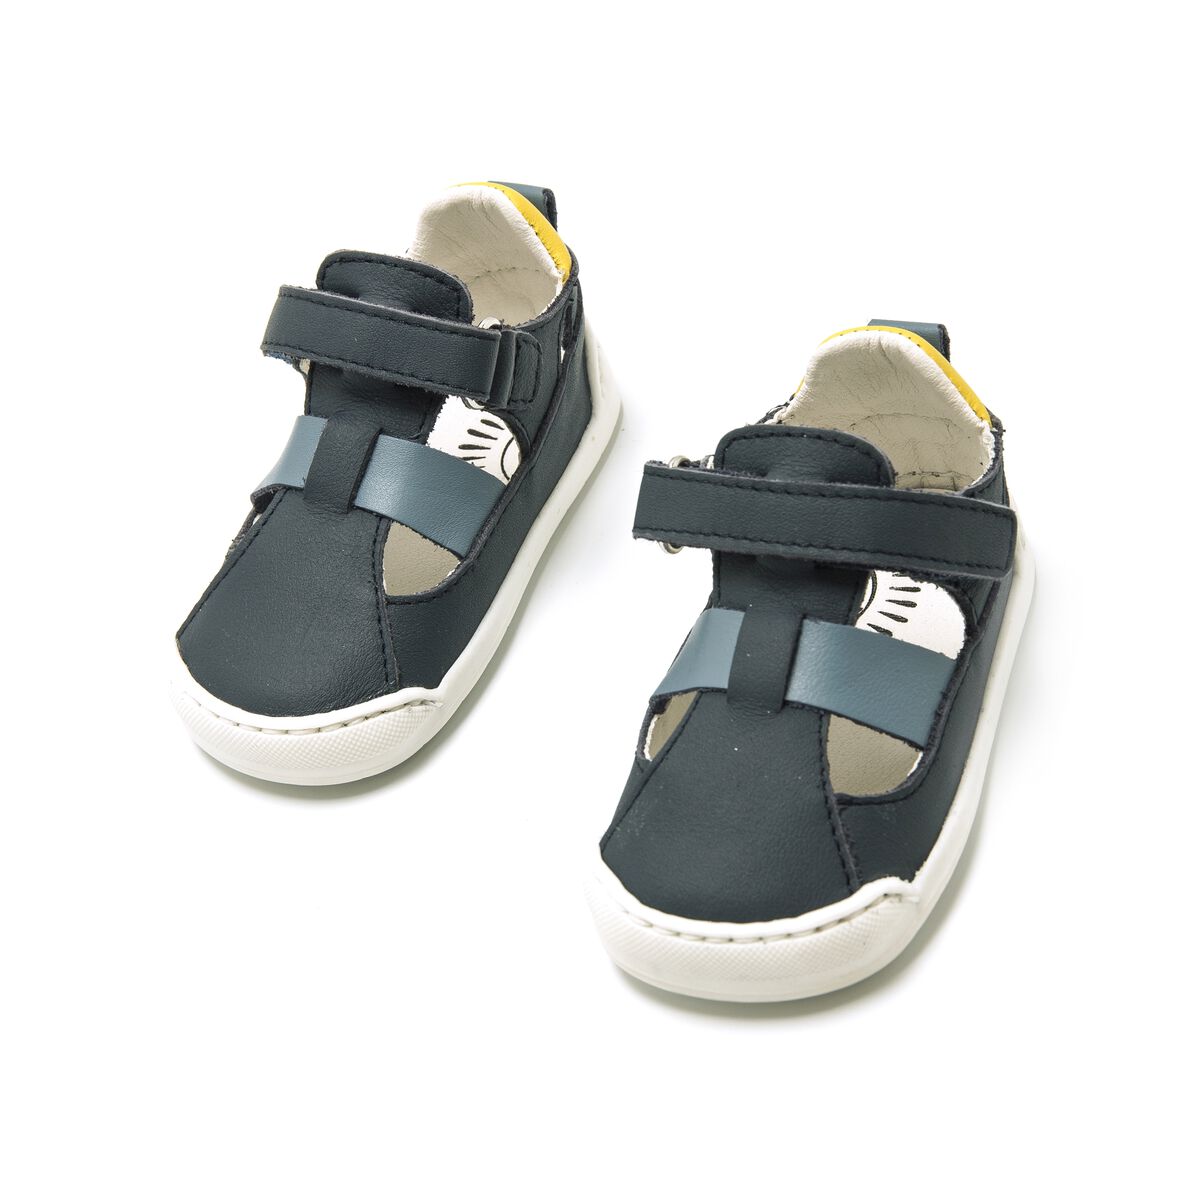 Sandalias de Nino modelo FREE BABY de MTNG image number 2